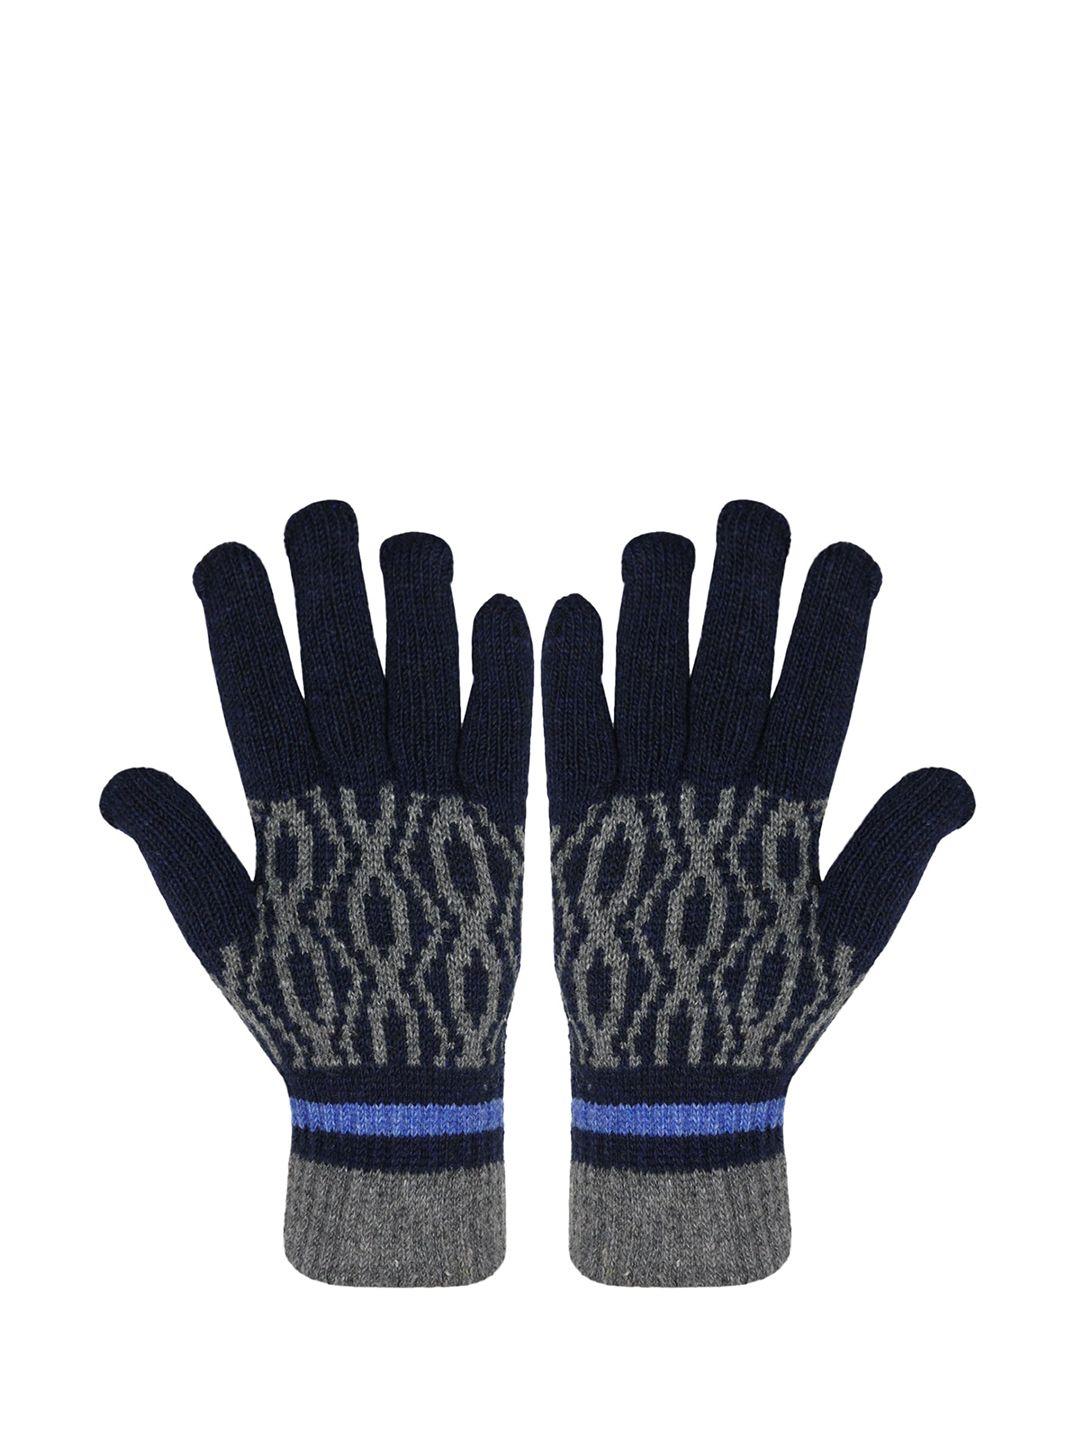 baesd unisex patterned full finger woolen winter gloves